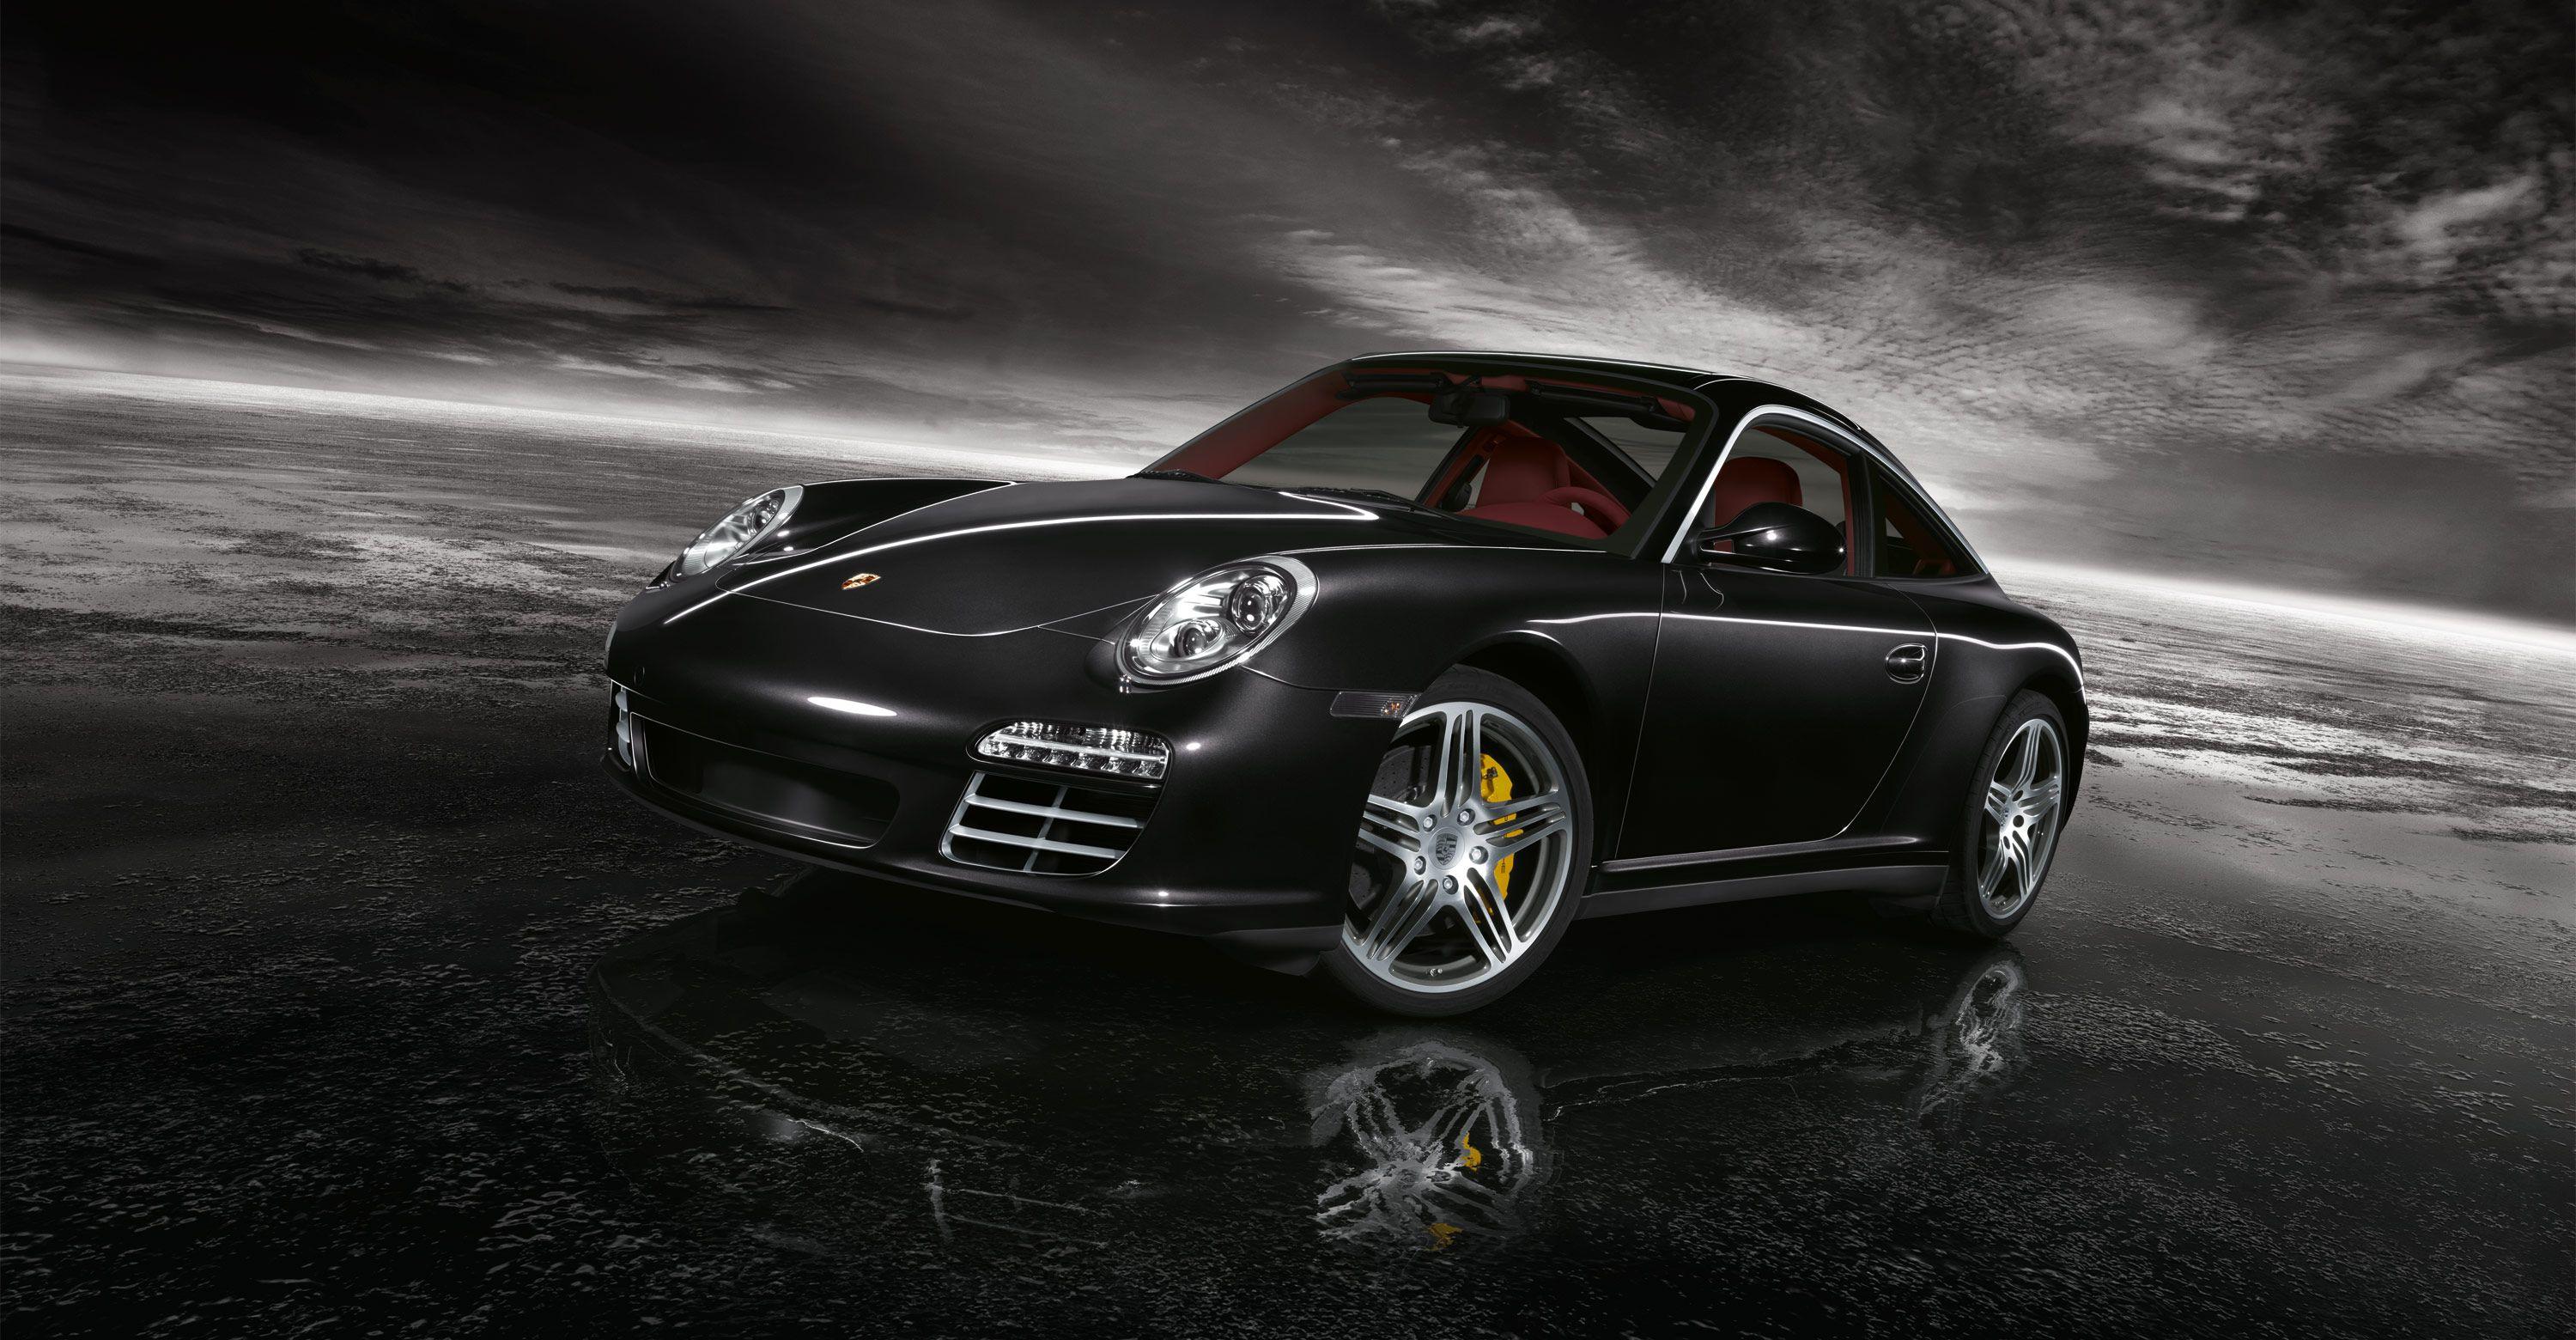 Wallpaper.wiki Porsche 911 Black Turbo Image PIC WPD001266